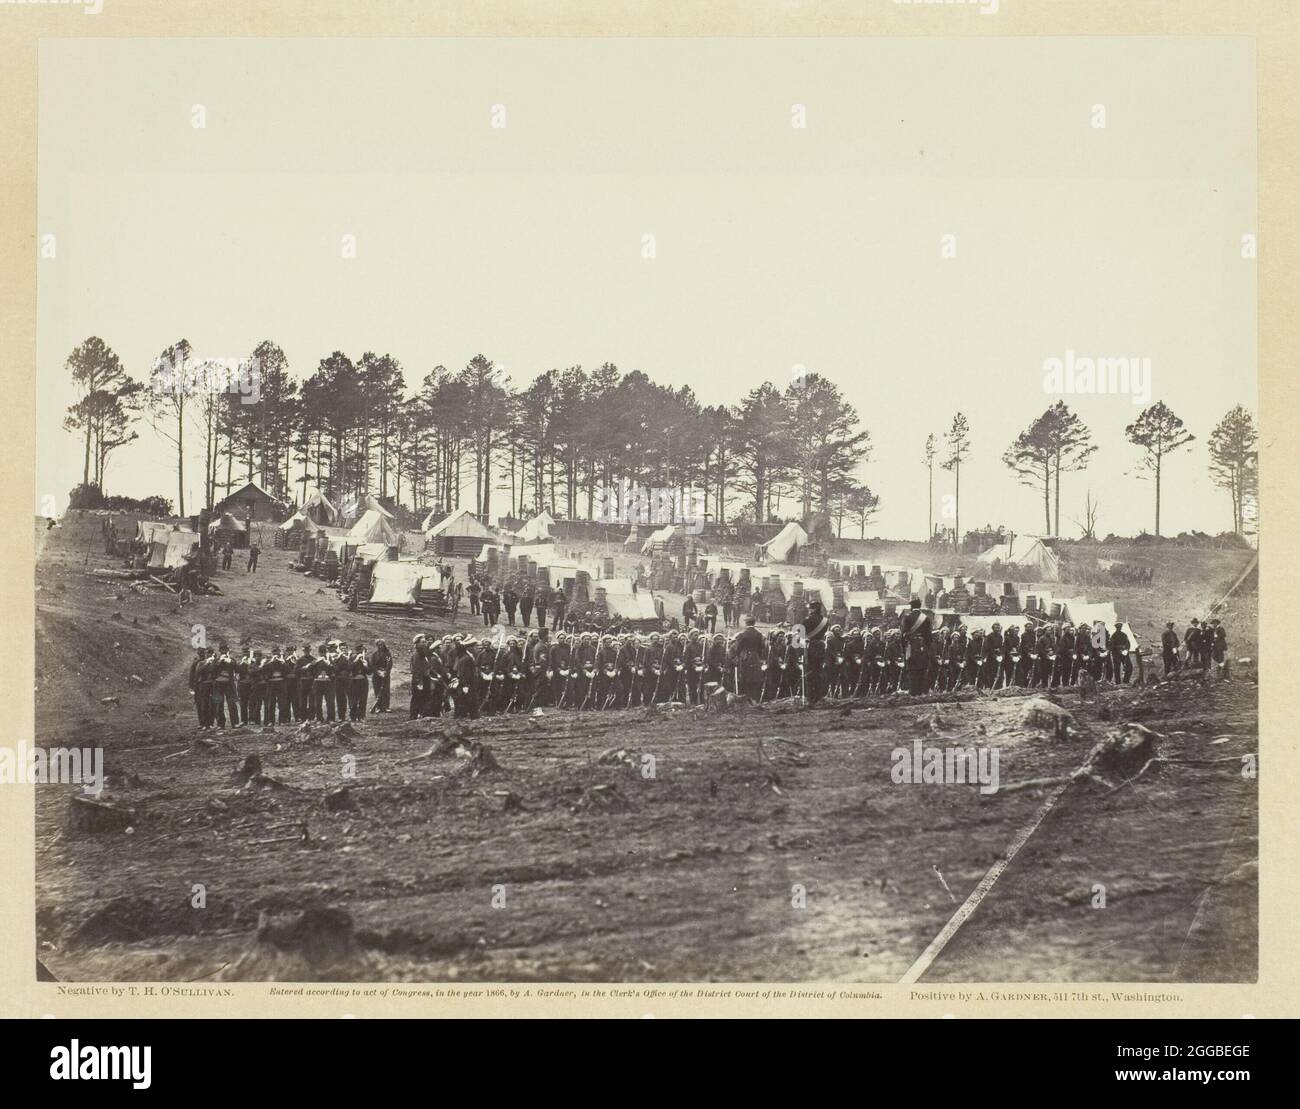 Mont de la Garde, quartier général de l'Armée du Potomac, février 1864. Imprimé albumine, pl. 55 de l'album "Gardner's Photographic Sketch Book of the War, Volume II" (1866) Banque D'Images